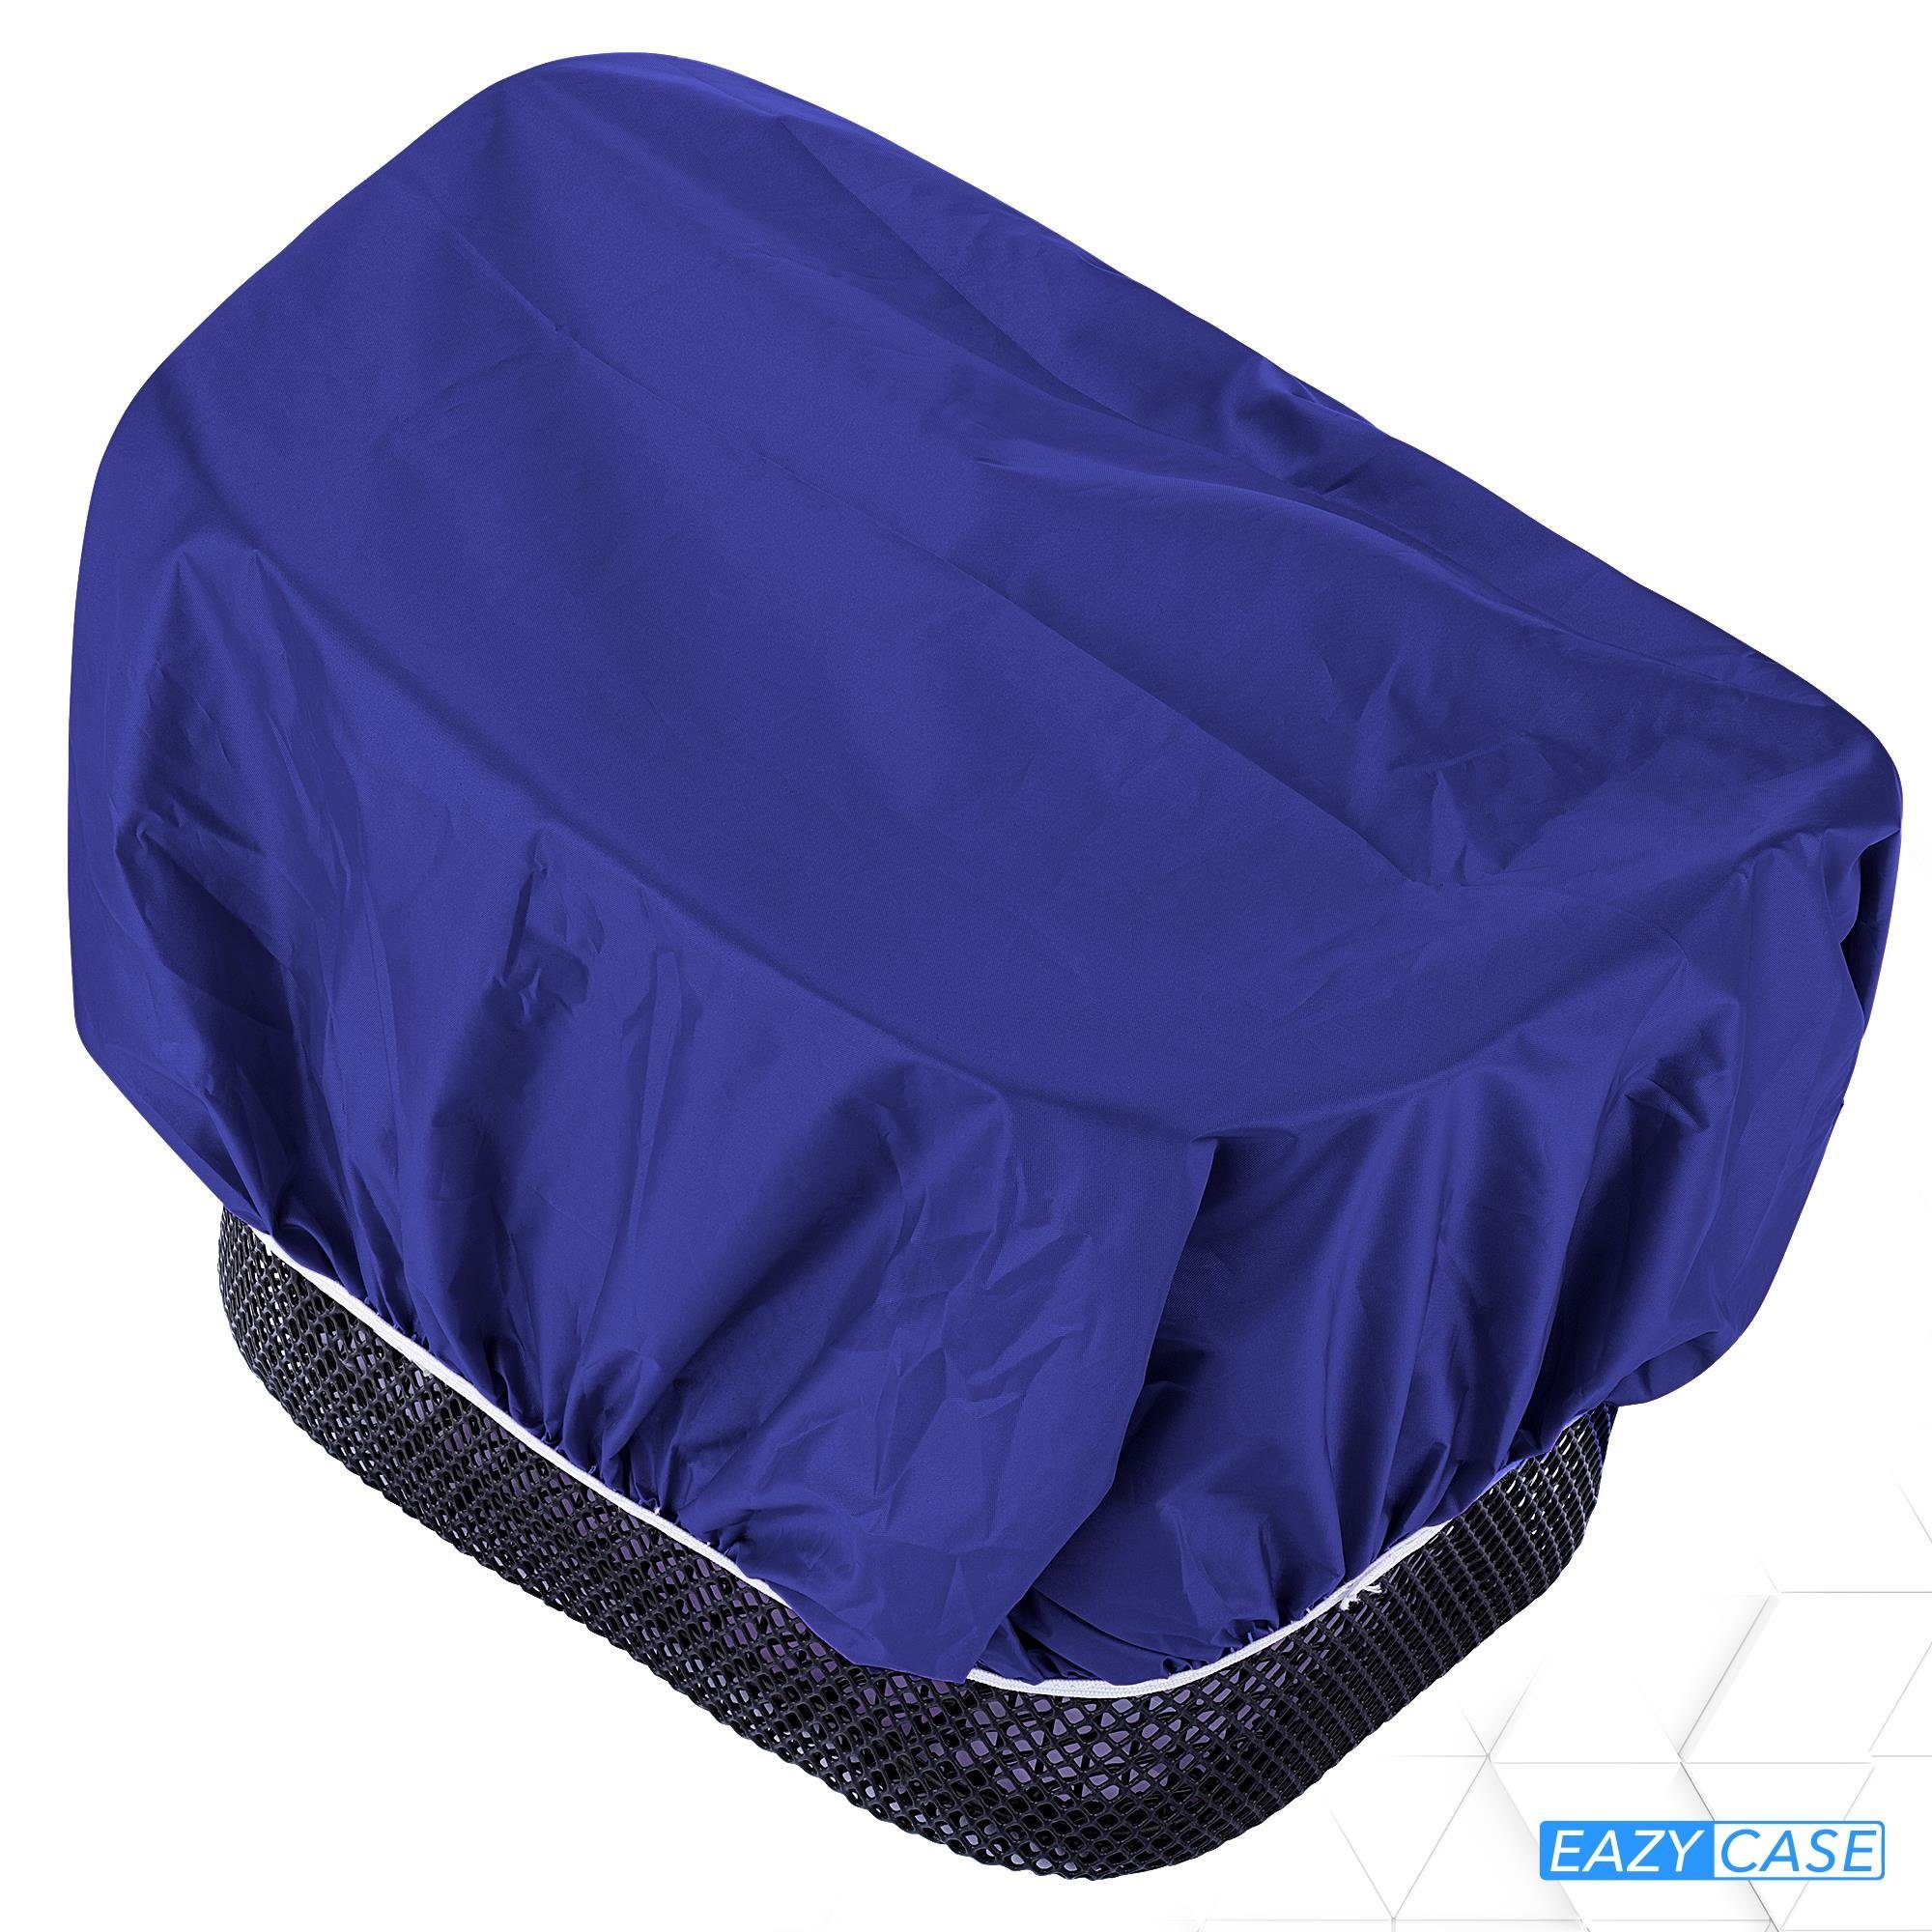 EAZY CASE Fahrradkorb Universal Korb, Regenschutz Regenhülle Korbüberzug für Fahrradkorb Blau für wasserabweisend Körbe